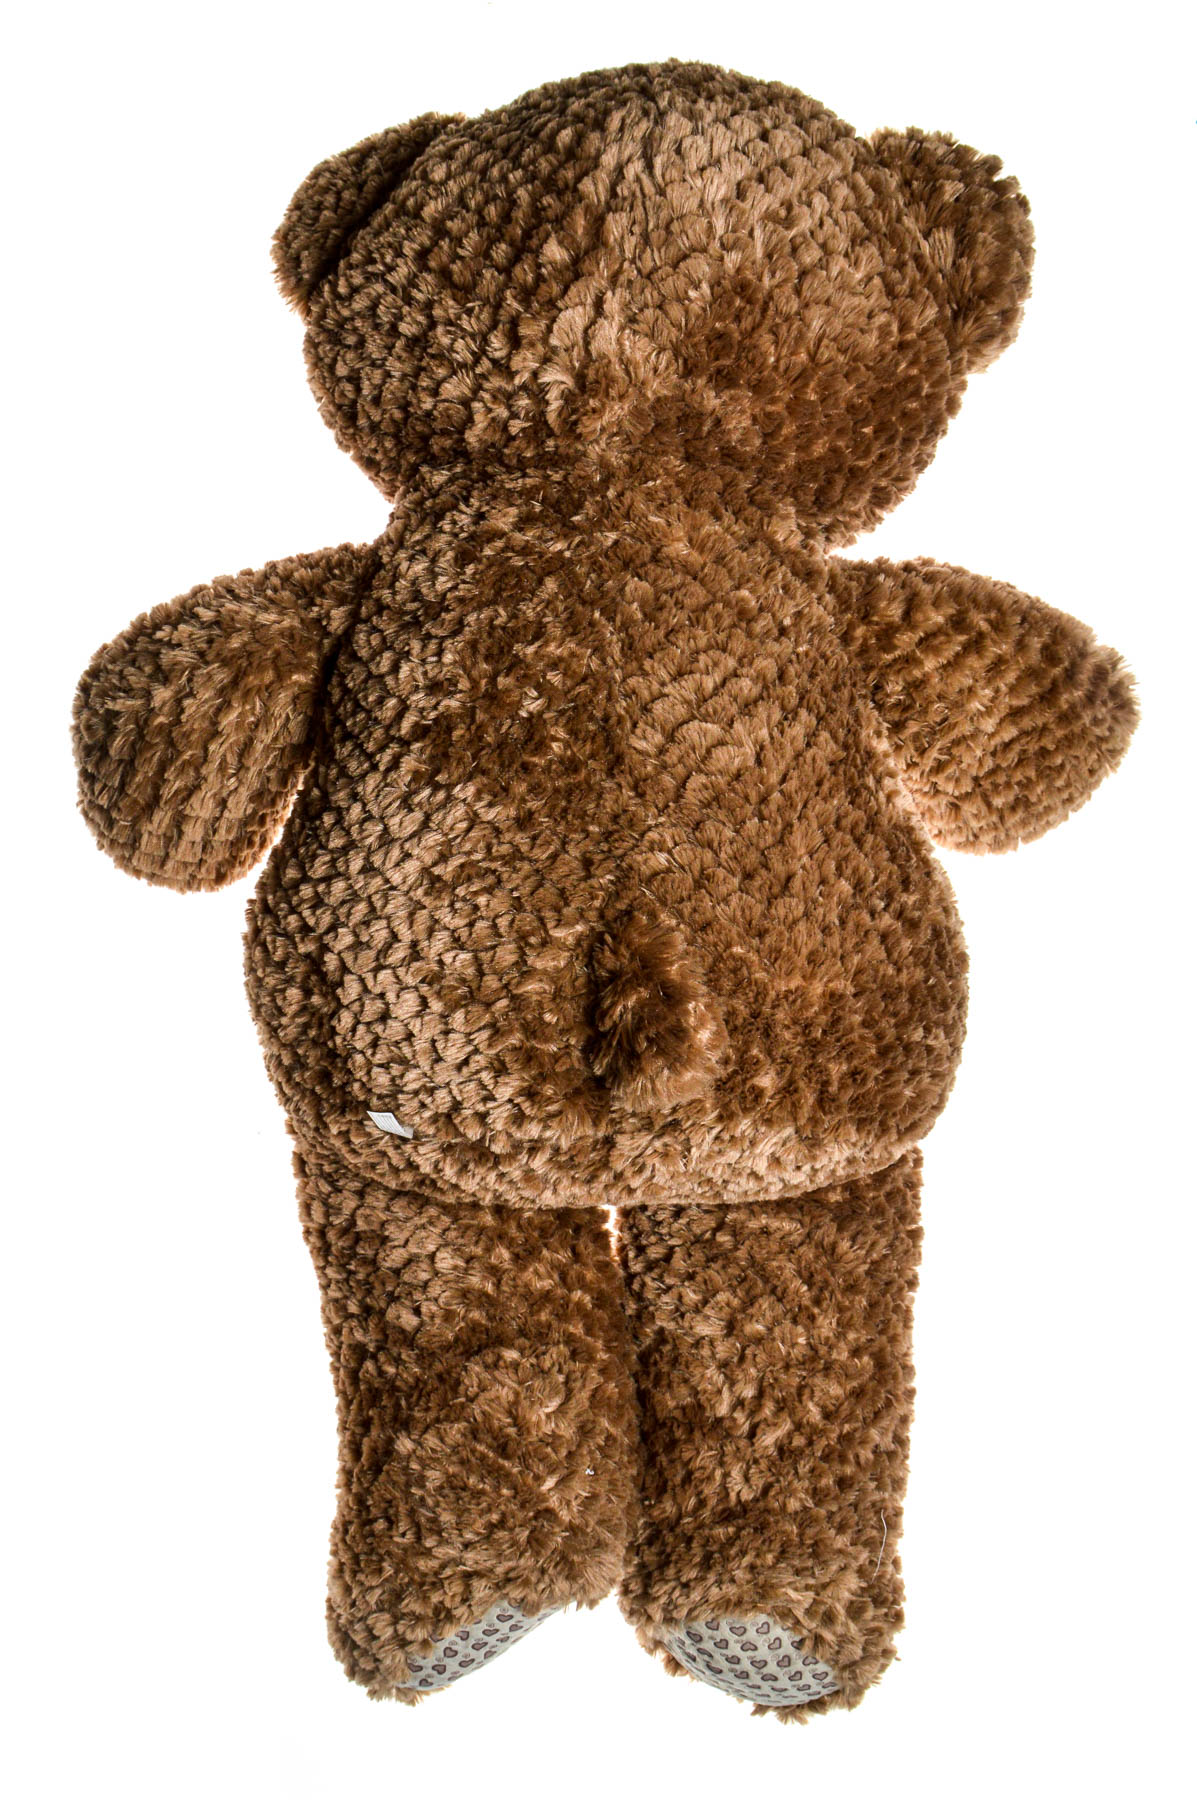 Stuffed toys - Cub - Amek Toys - 1